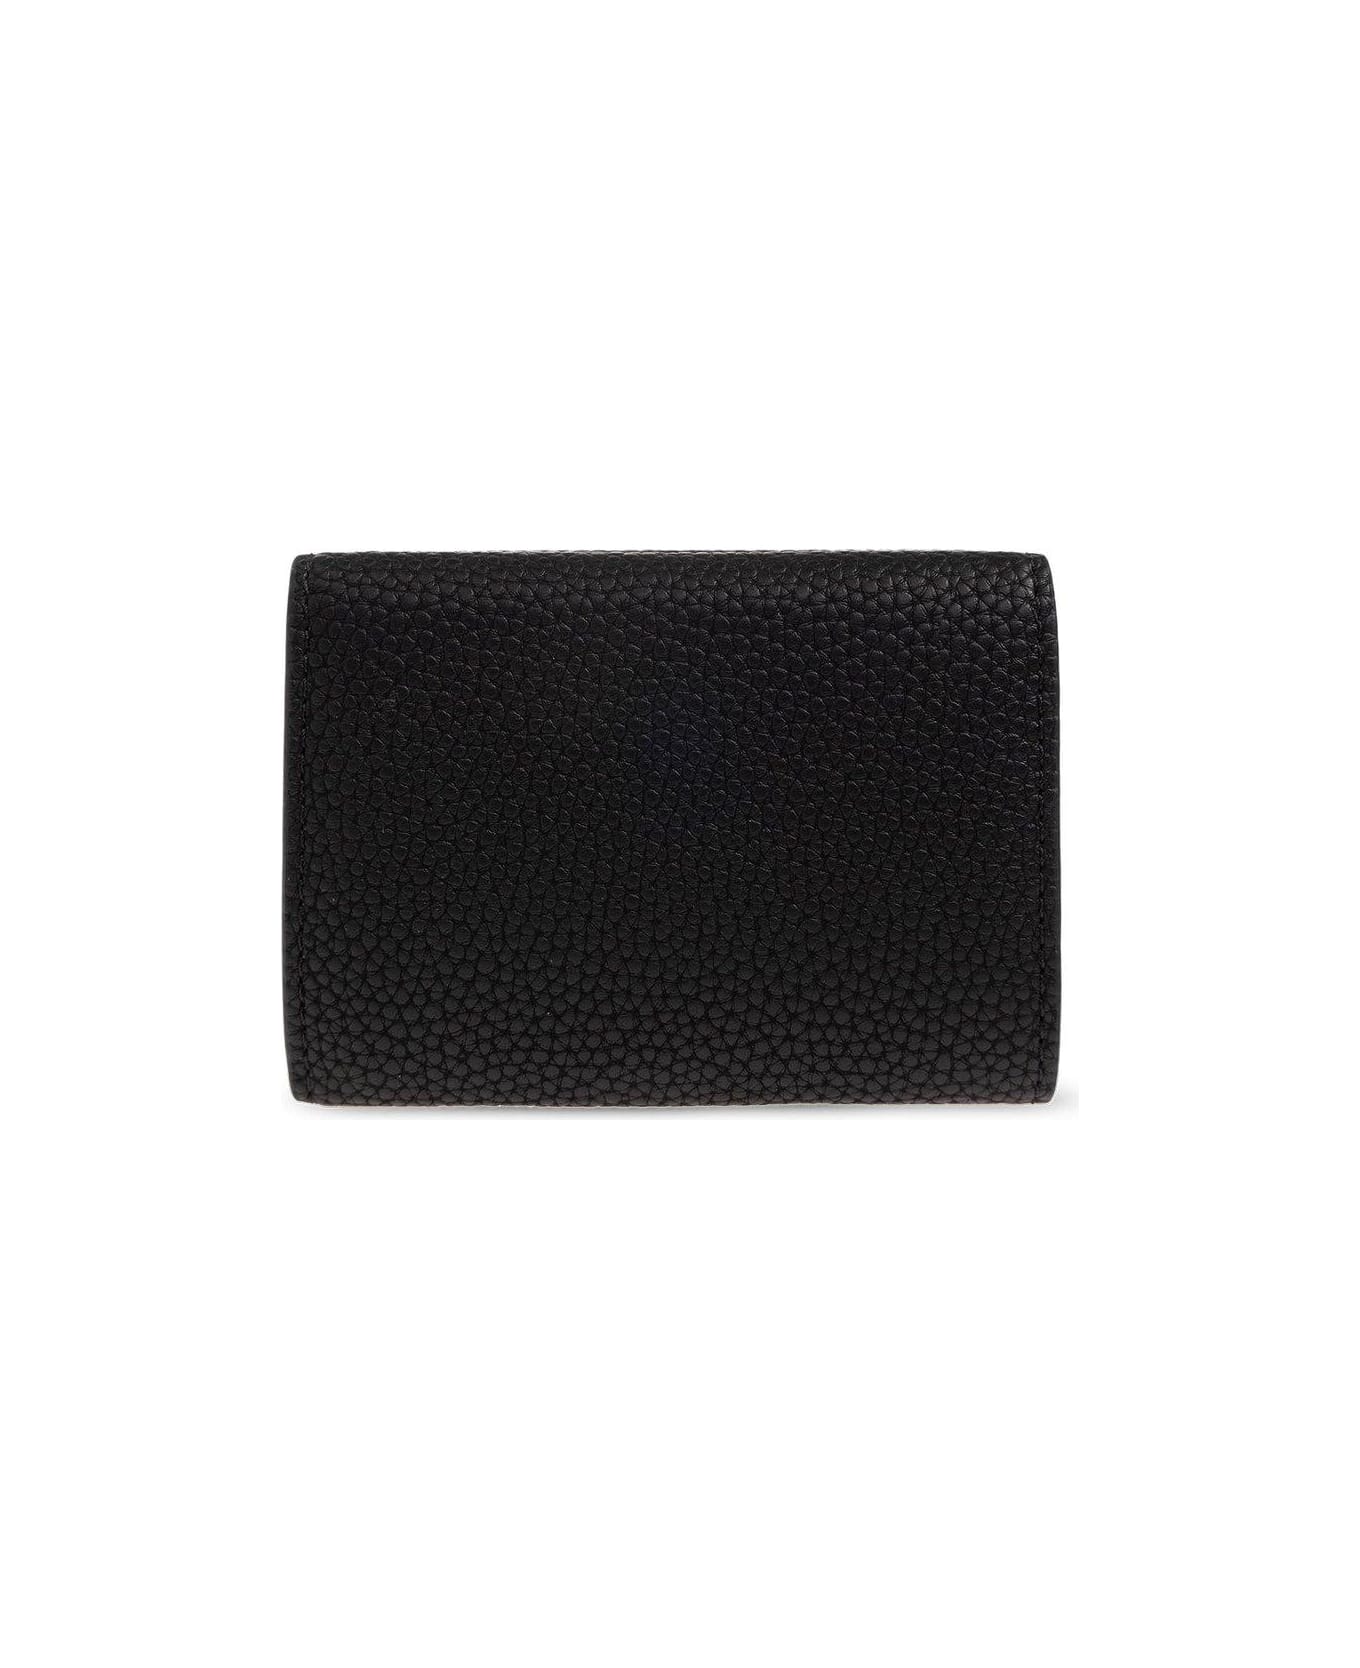 Emporio Armani Wallet With Logo - BLACK 財布